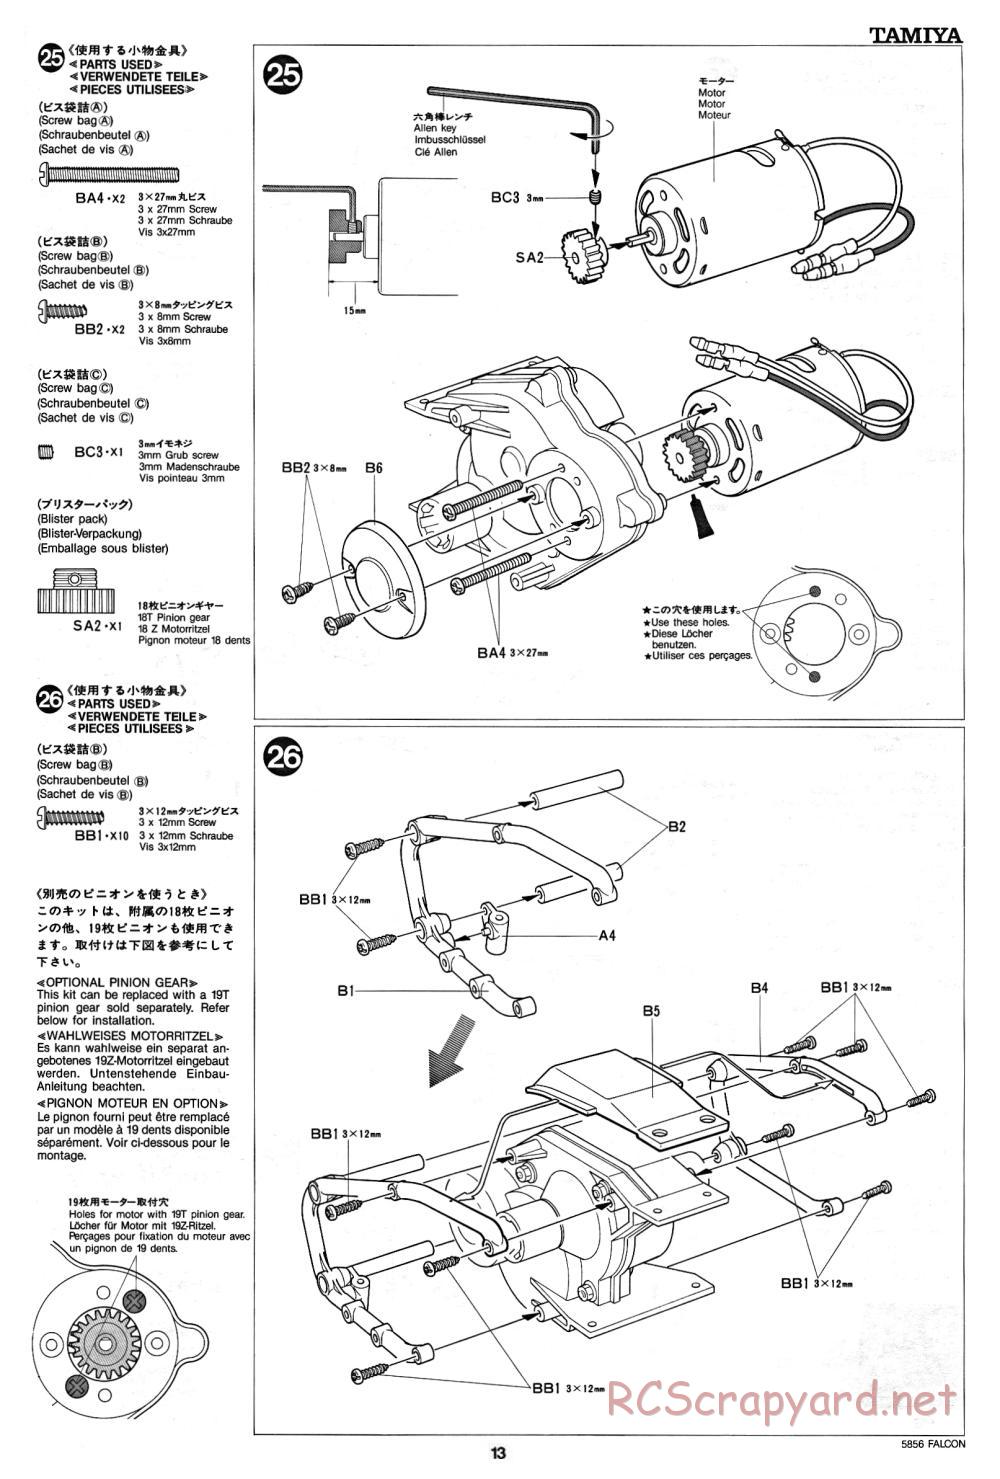 Tamiya - The Falcon - 58056 - Manual - Page 13